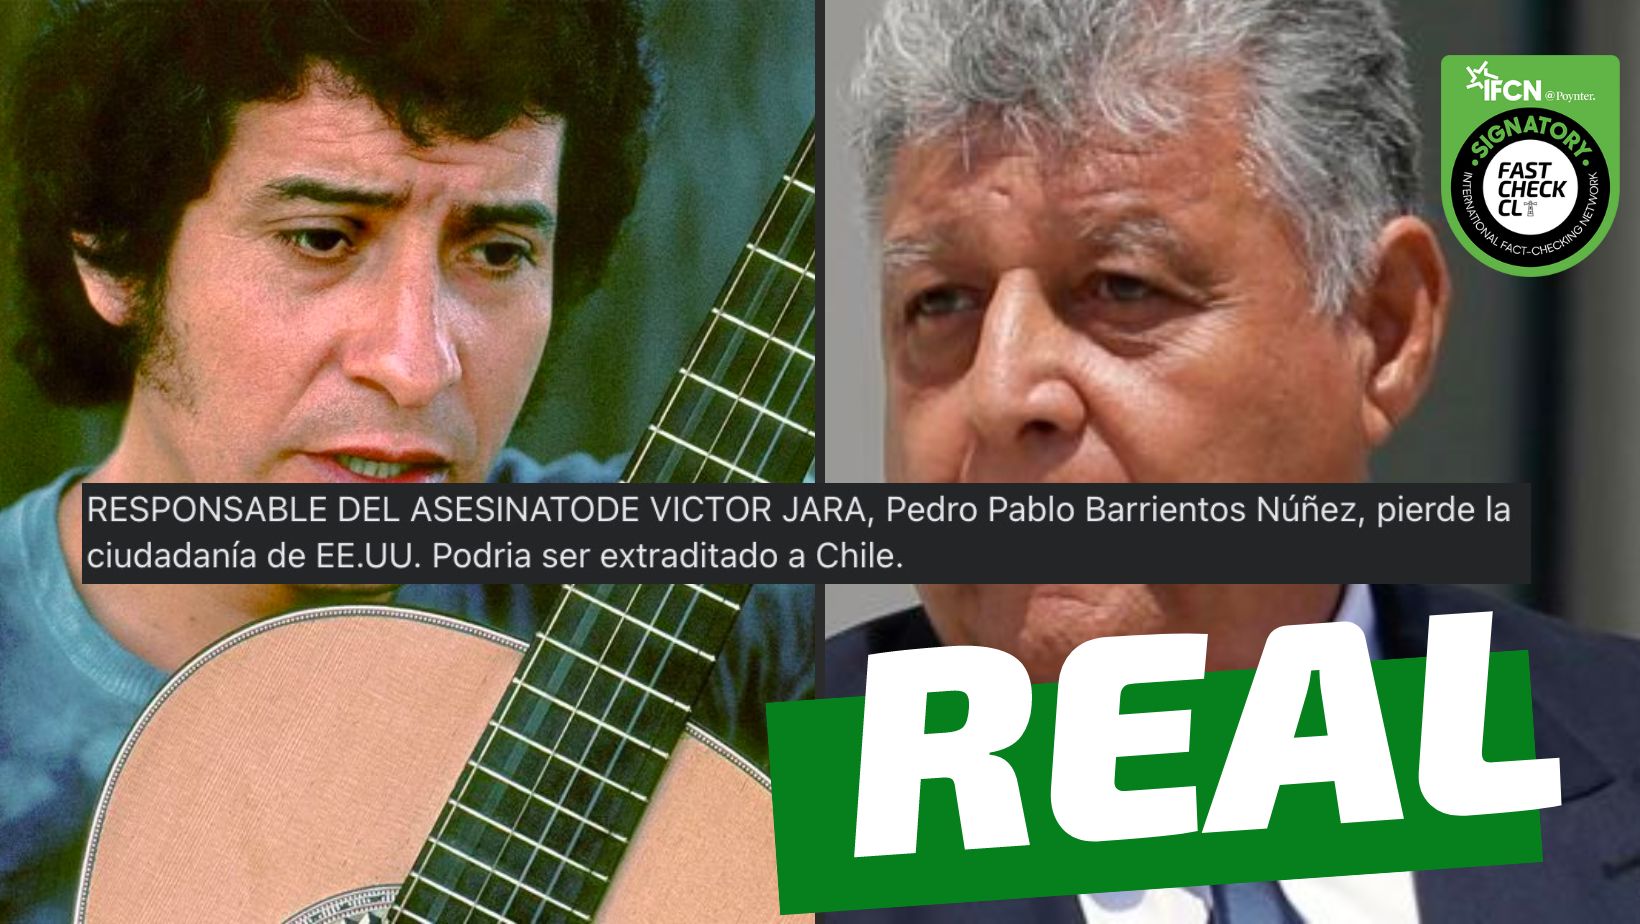 You are currently viewing “Responsable del asesinato de Víctor Jara, Pedro Pablo Barrientos Núñez, pierde la ciudadanía de Estados Unidos”: #Real